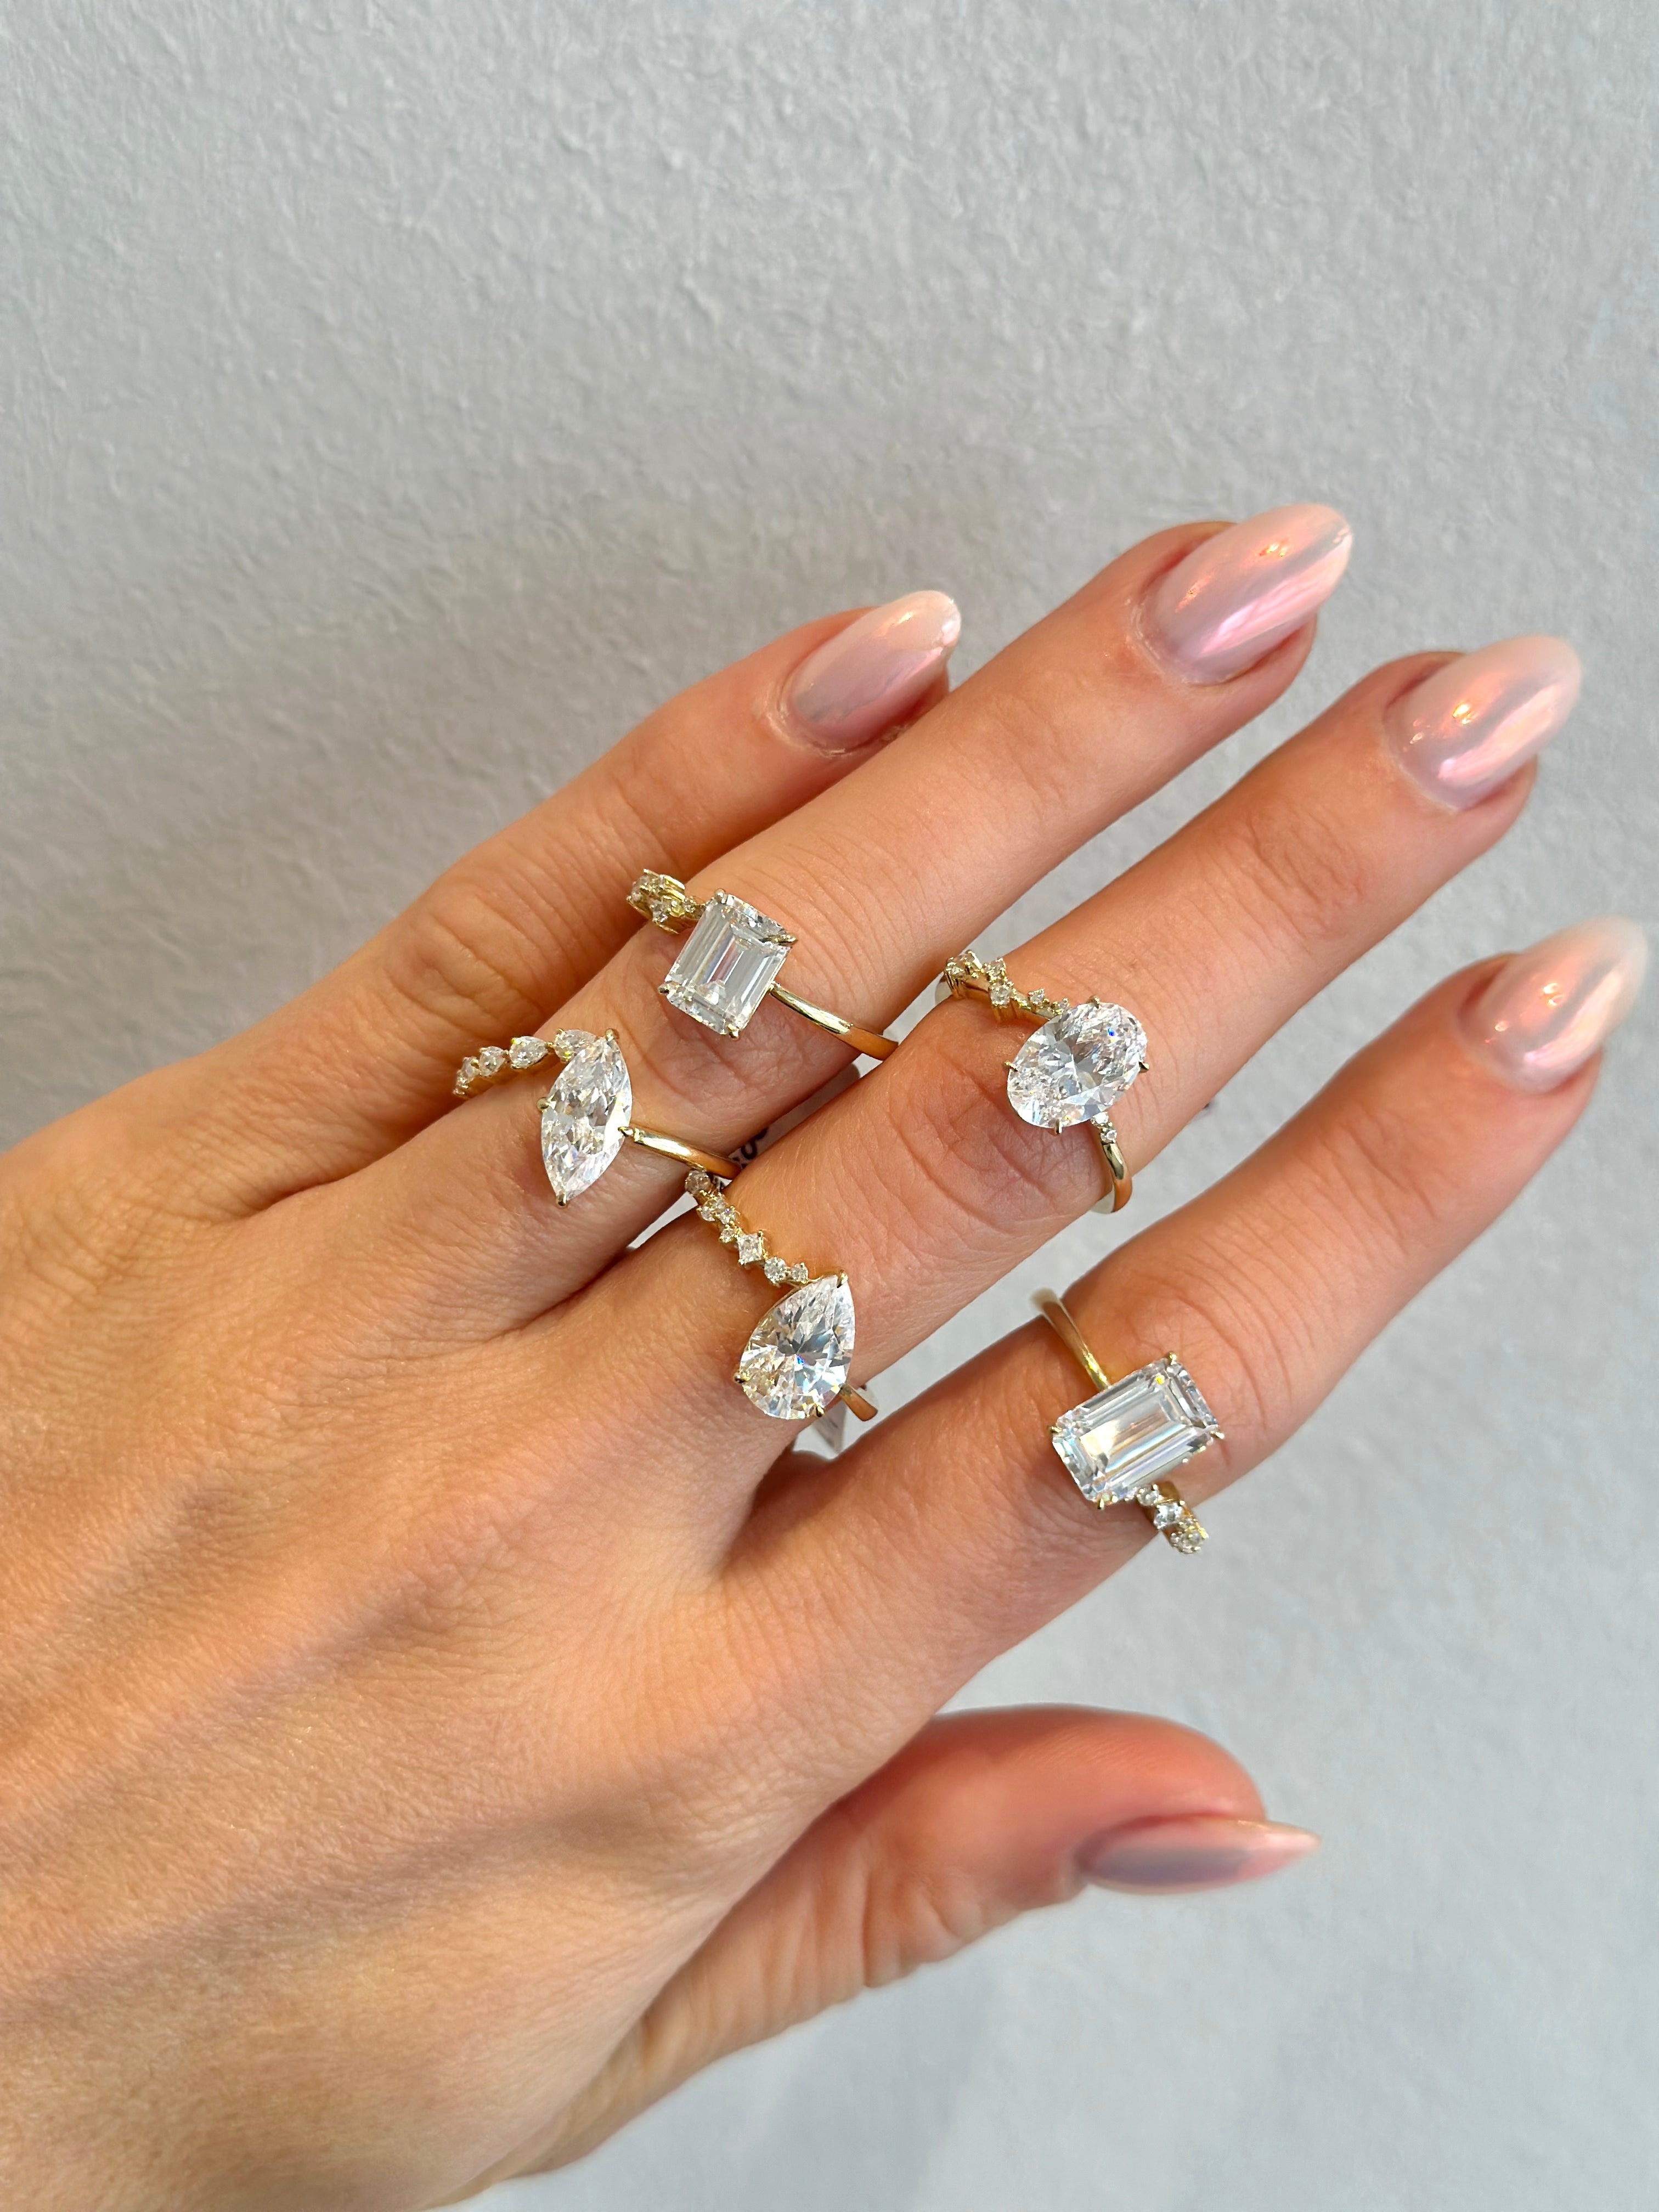 multiple diamond rings on hand